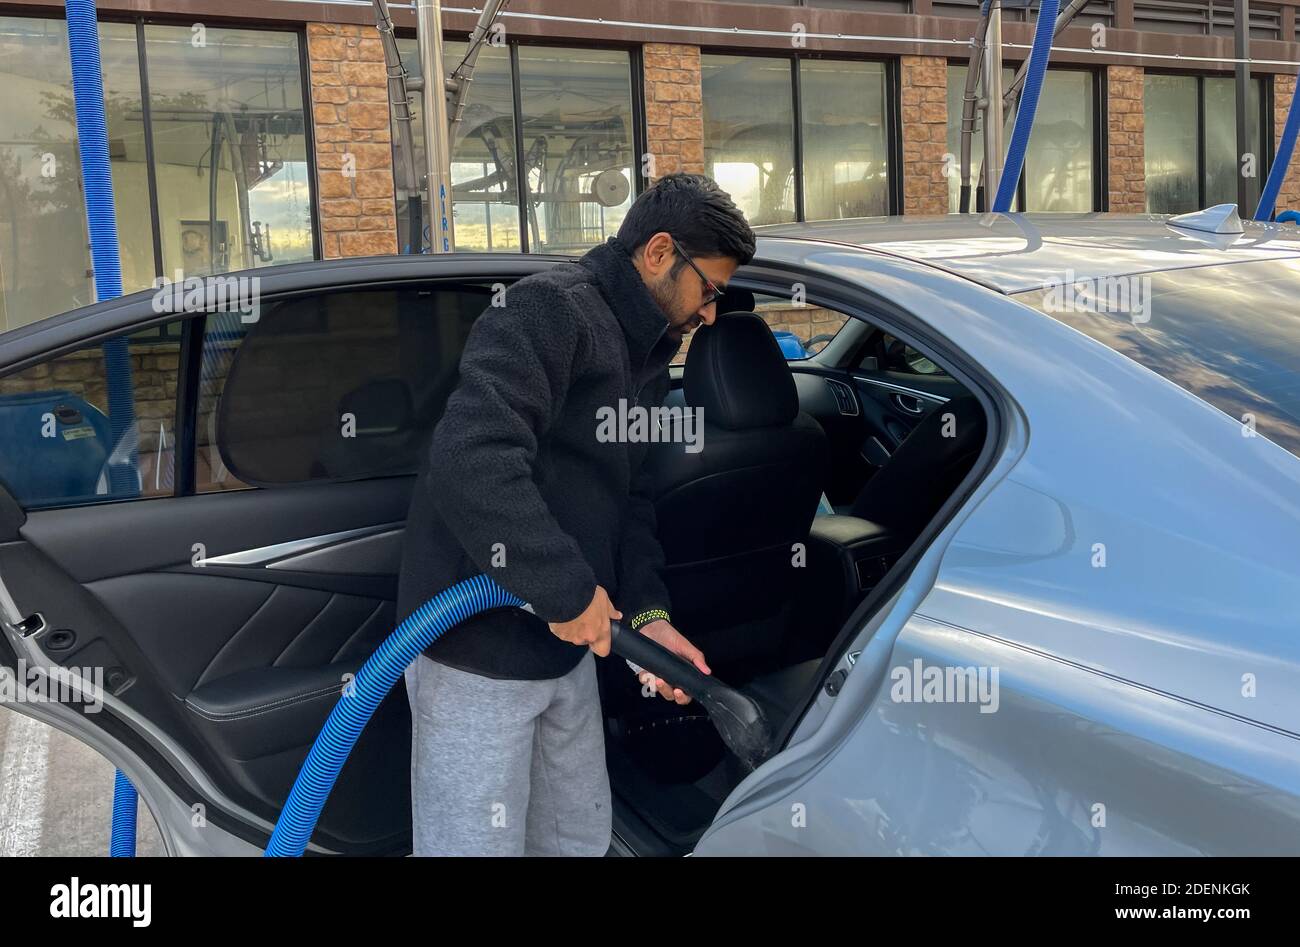 McKinney, TX / USA - 30 novembre 2020: Vue rapprochée d'un homme utilisant le tuyau d'aspiration pour aspirer sa voiture dans le stationnement sous vide libre-service Banque D'Images